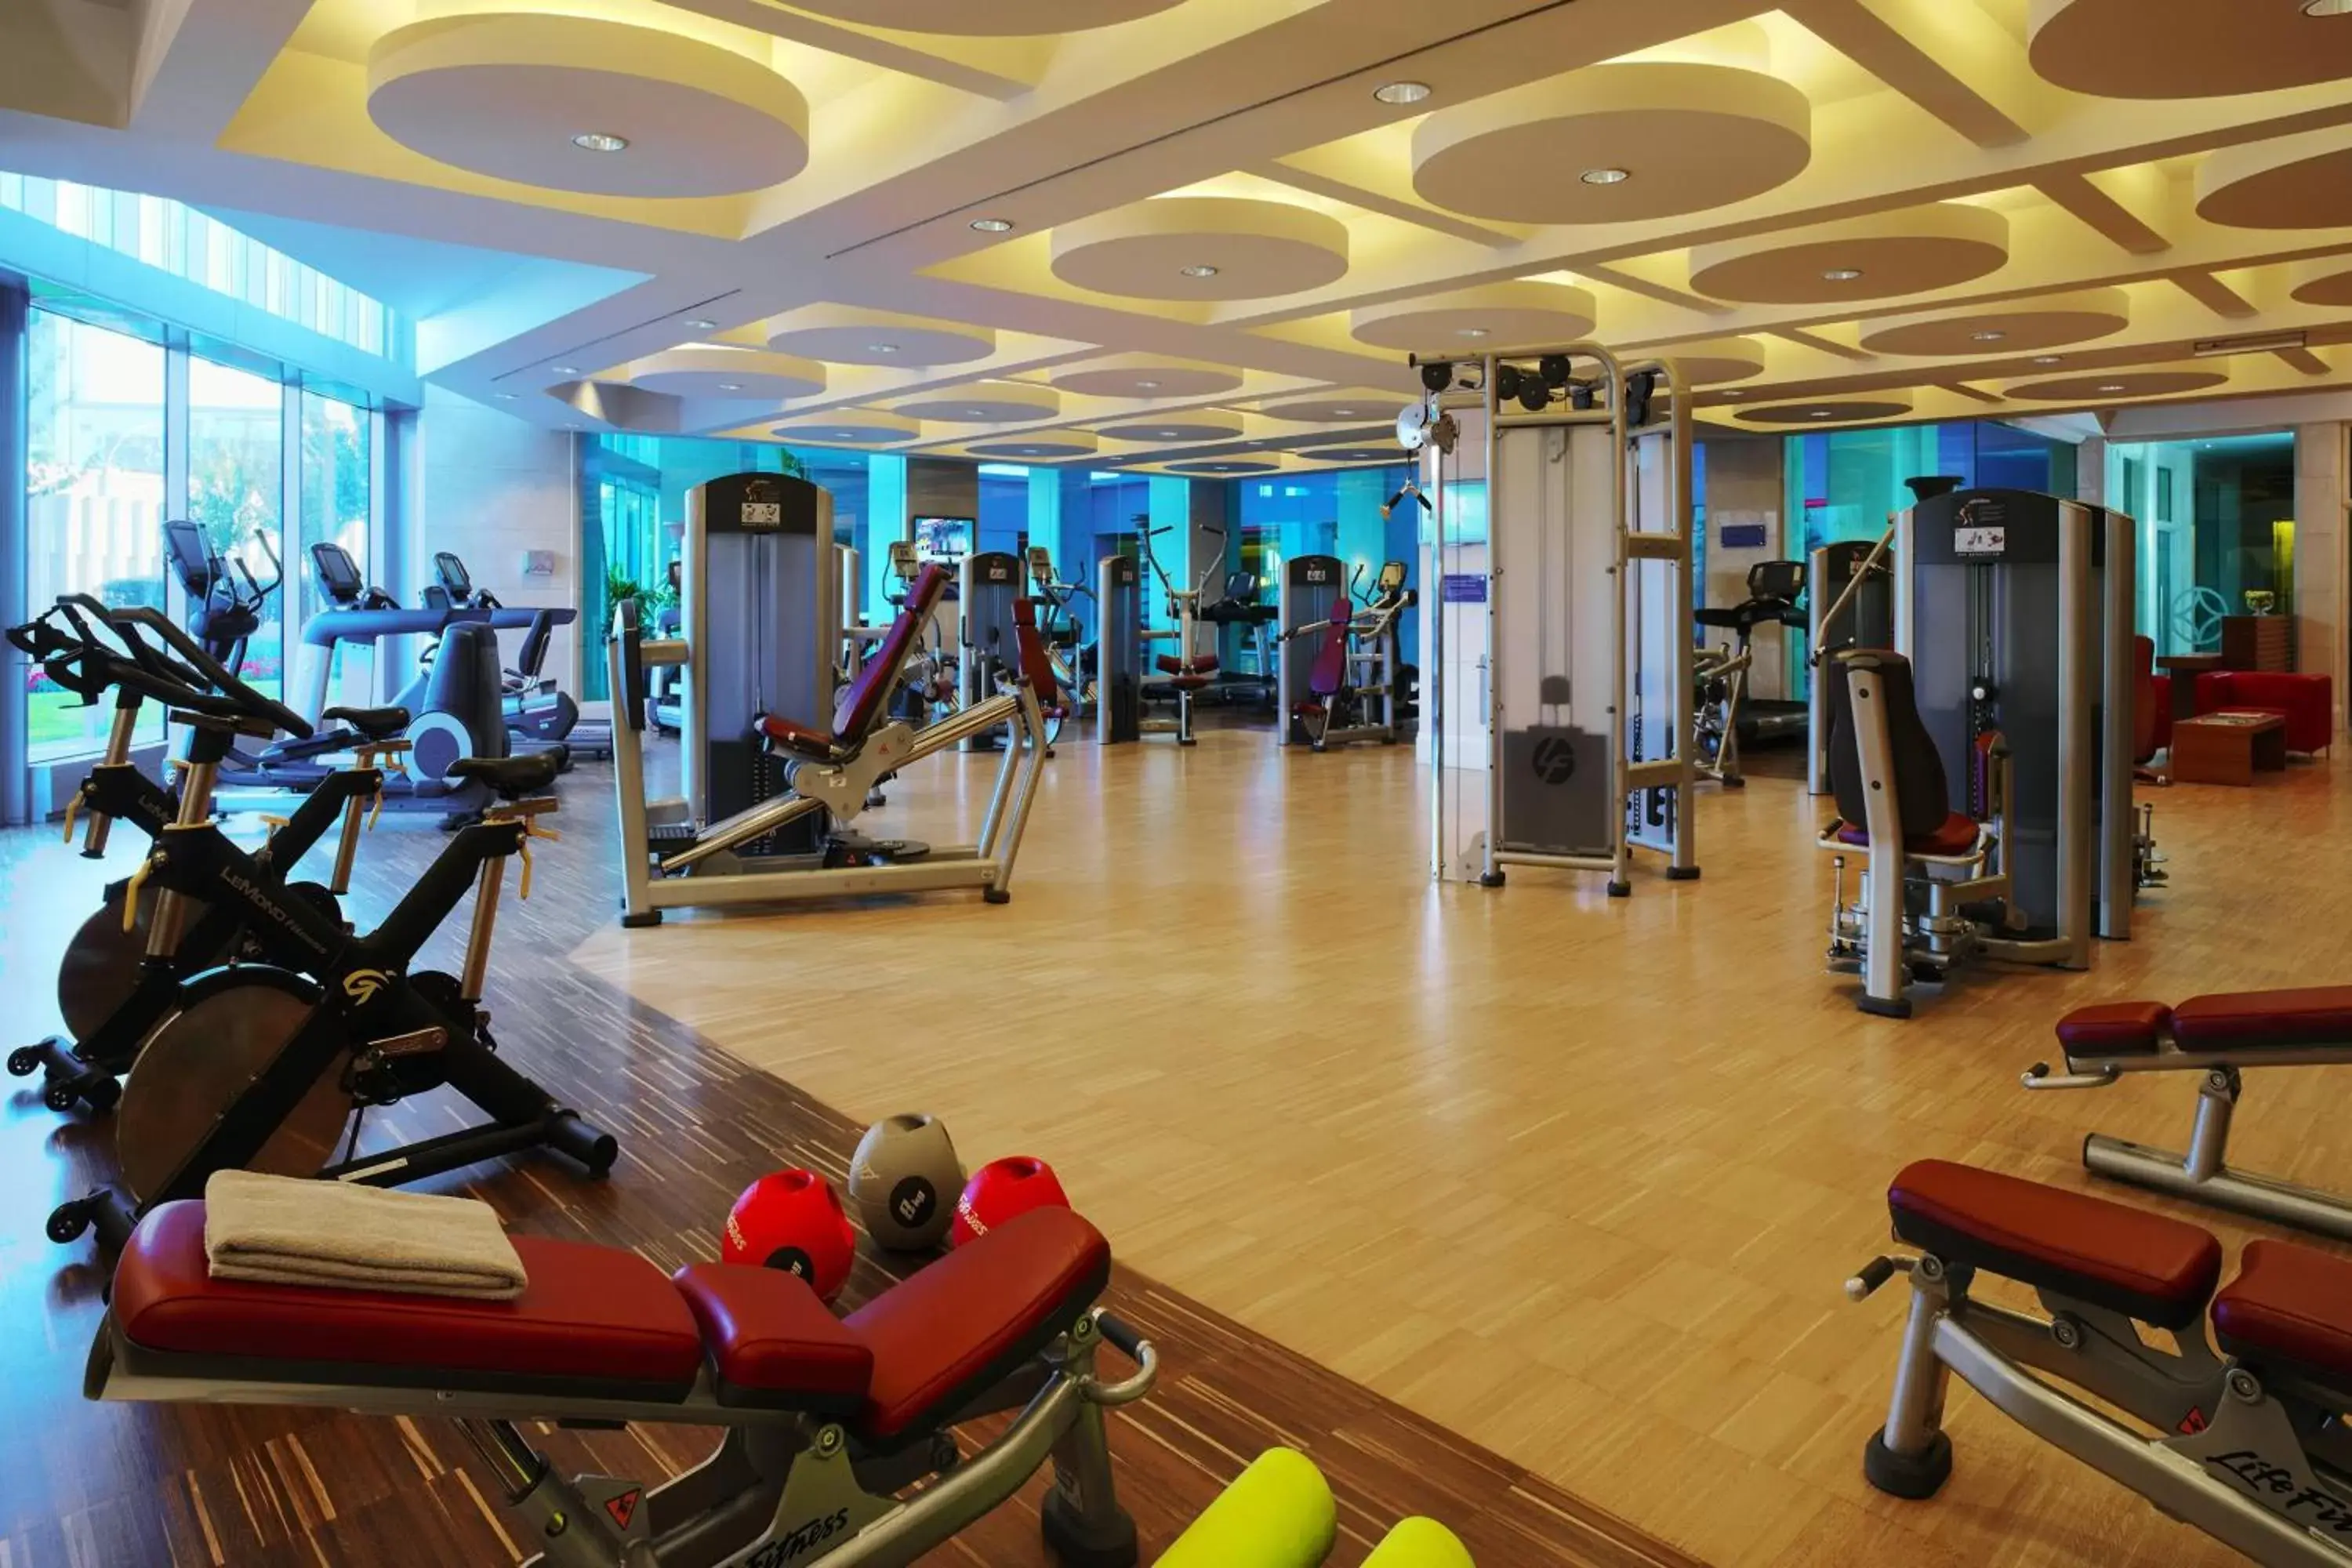 Fitness centre/facilities, Fitness Center/Facilities in JW Marriott Hotel Ankara